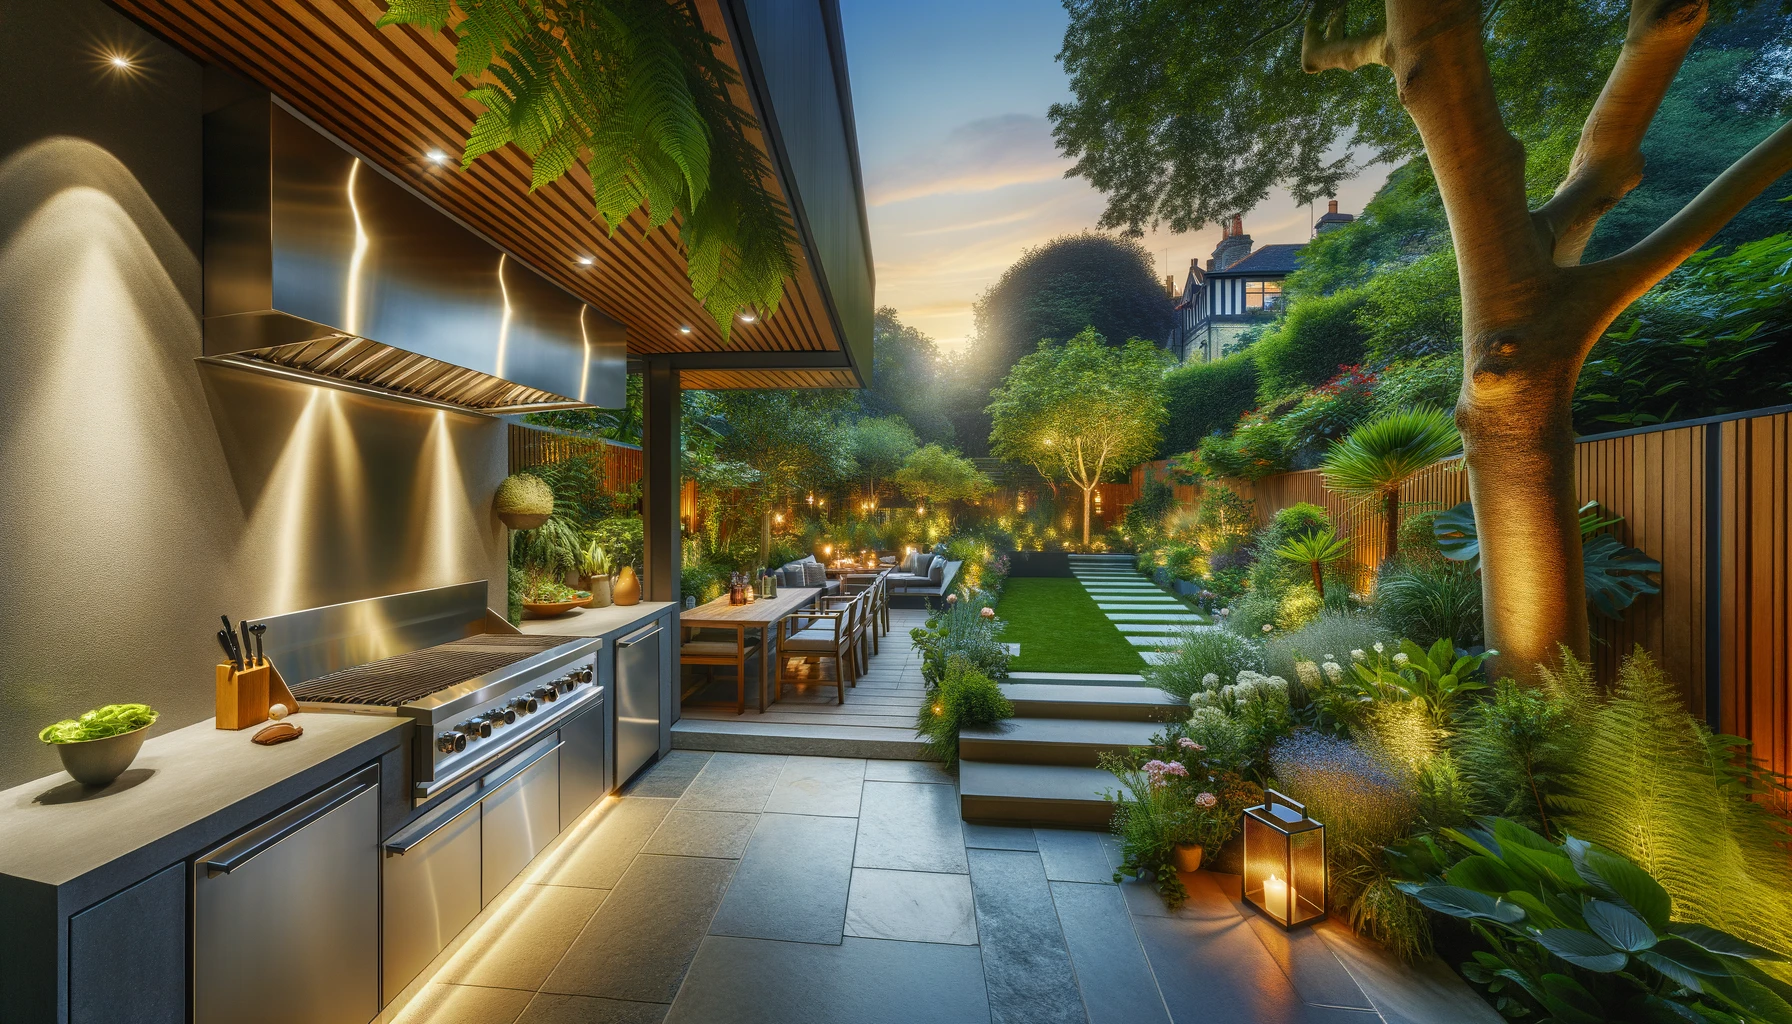 Illuminated outdoor kitchen and garden at dusk.